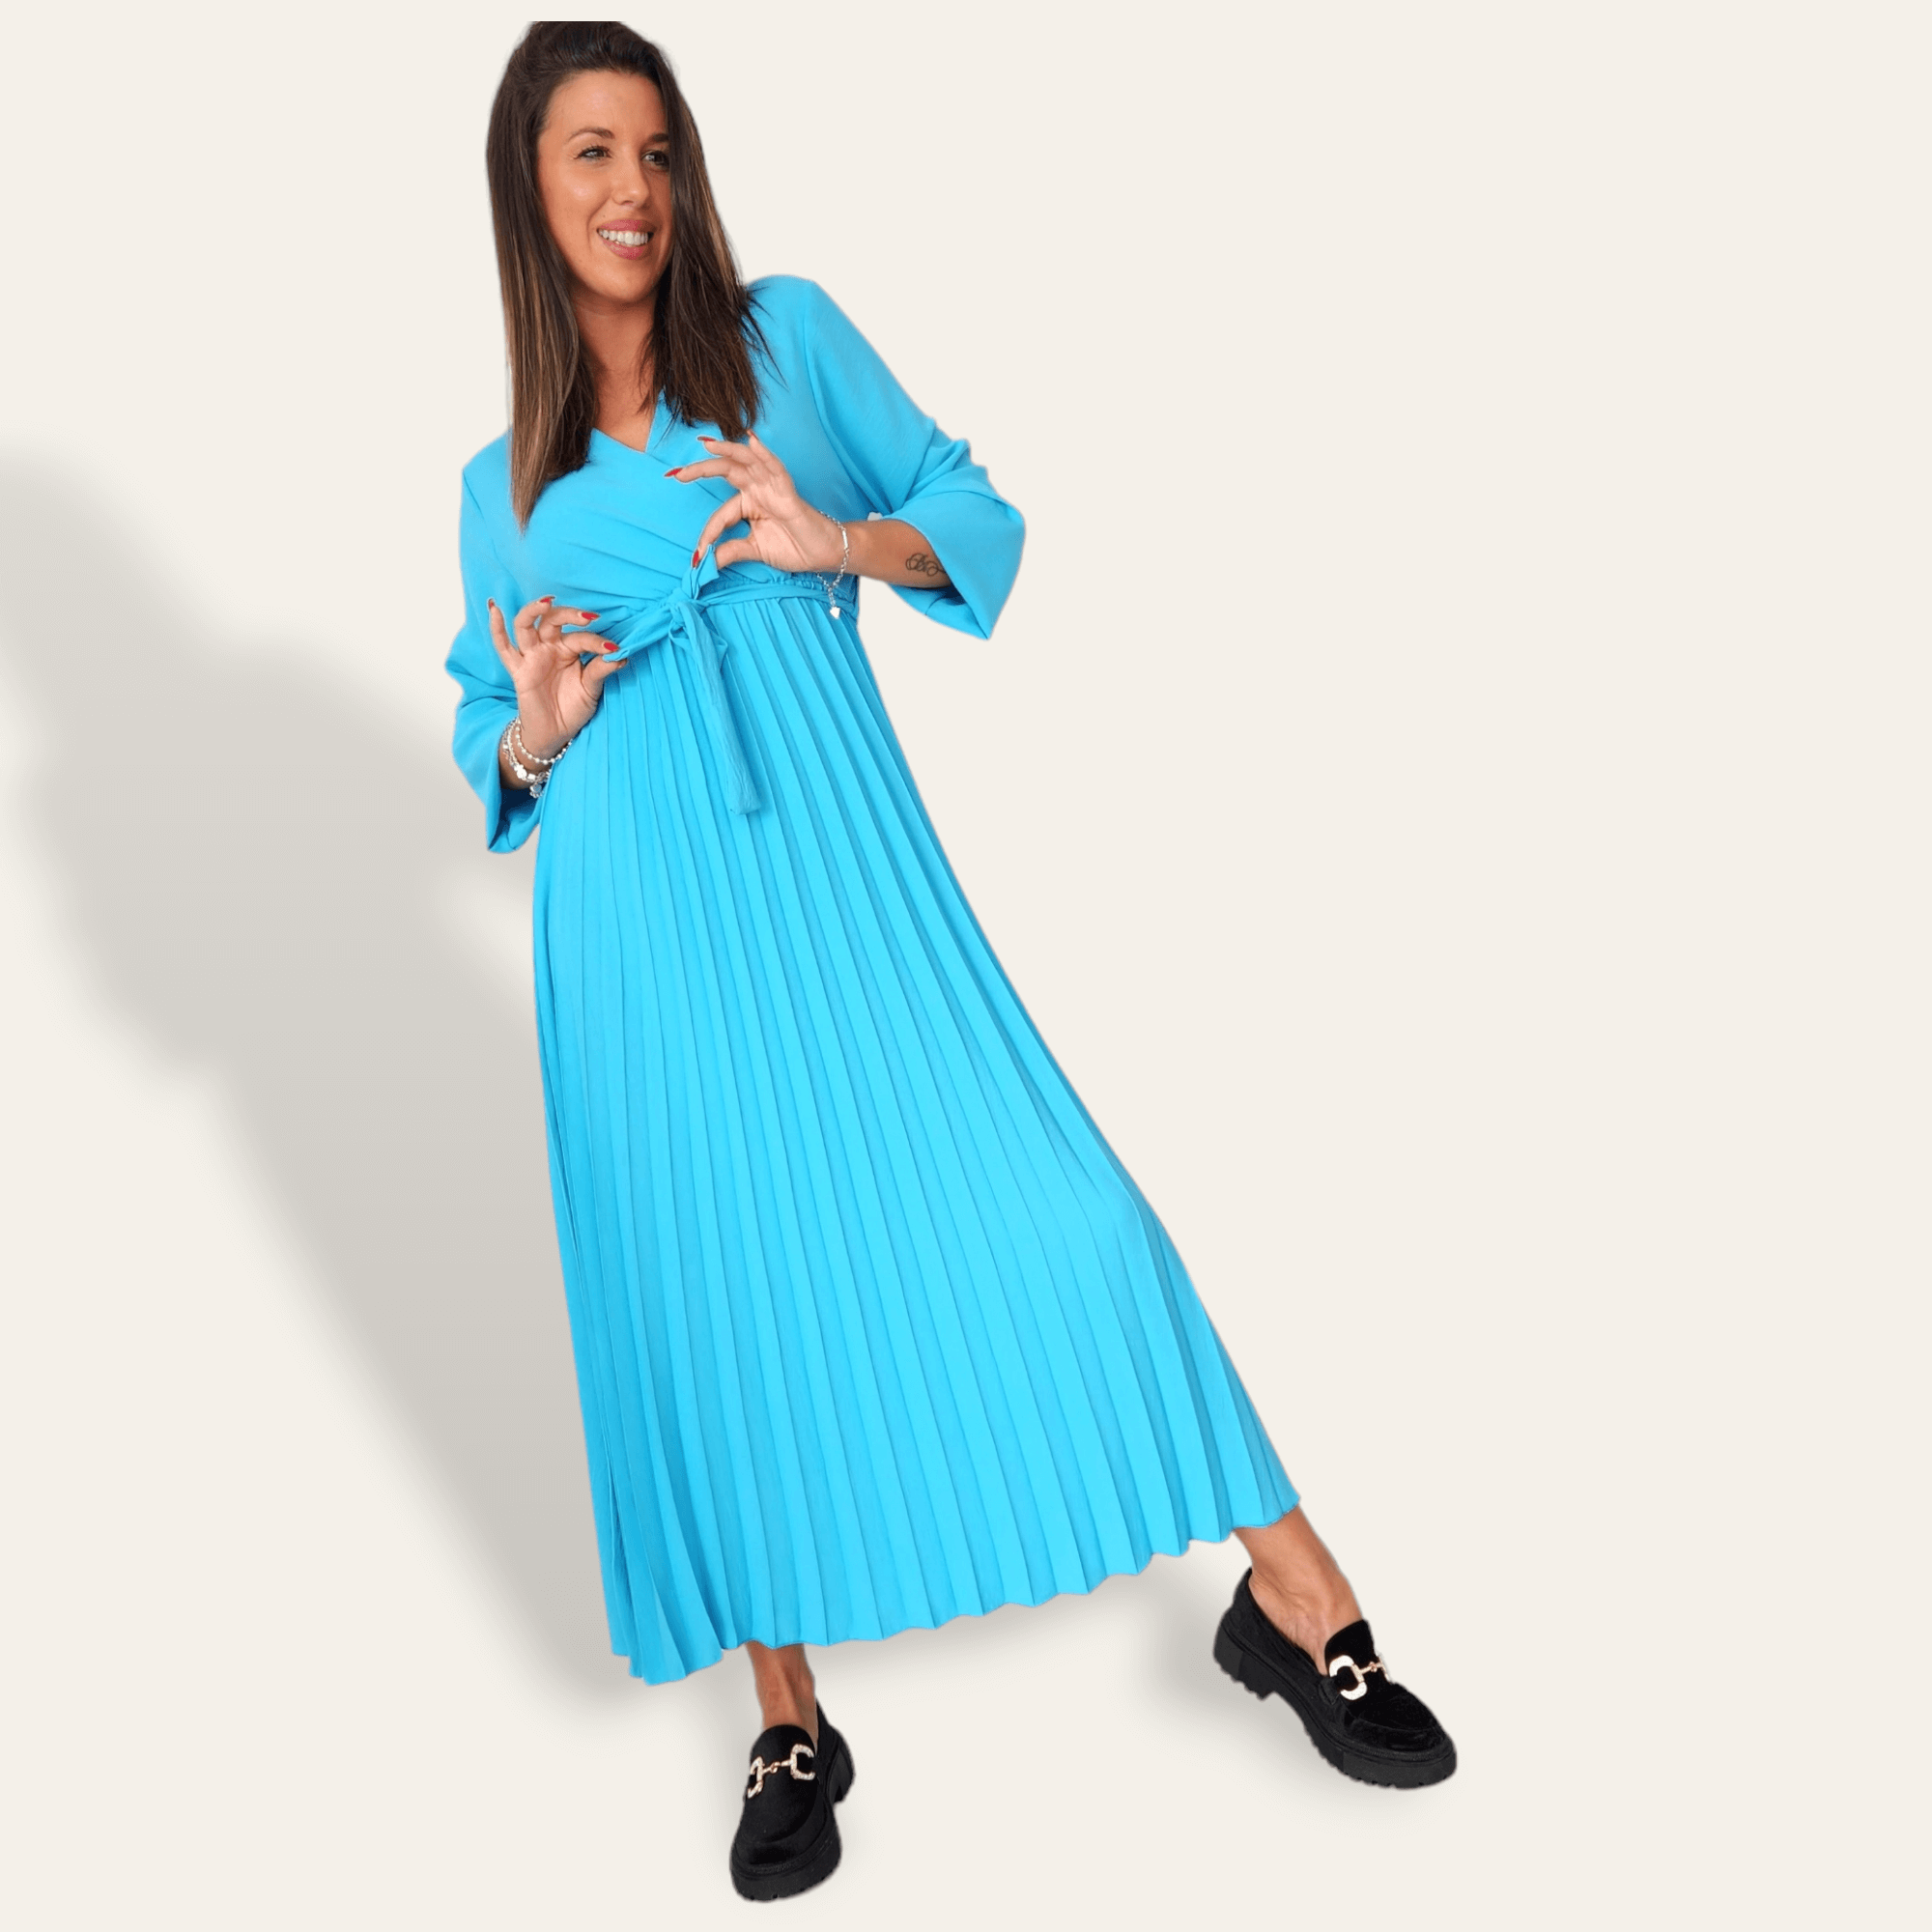 Capri blue selene dress